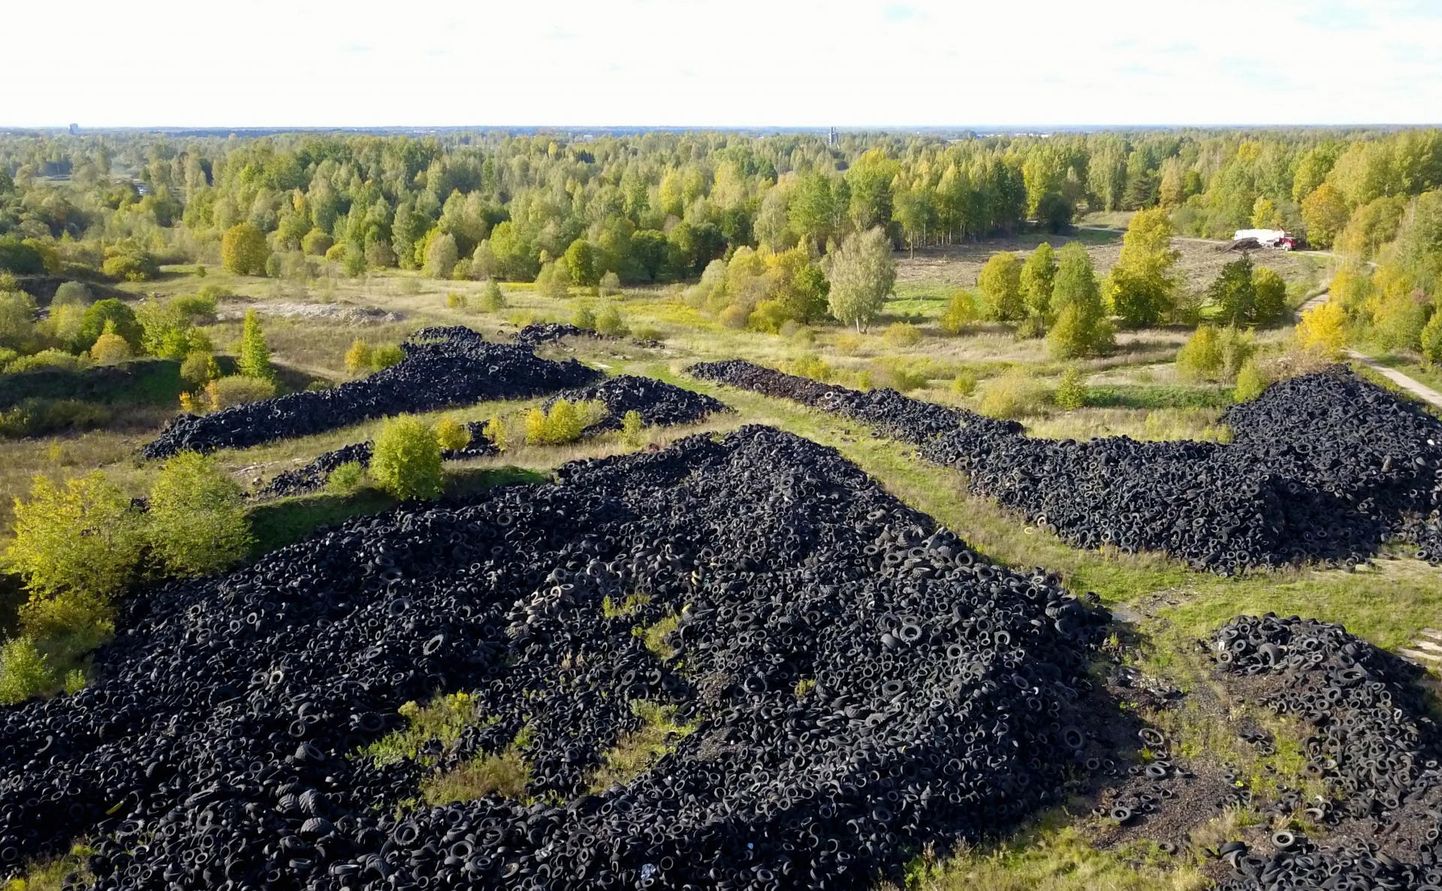 Aastatega on Raadi vanale sõjalennuväljale kogunenud 12 000 – 15 000 tonni vanu rehve. Eesti Energia tahab vanadest rehvidest õli tootmist alustada järgmisel aastal. 